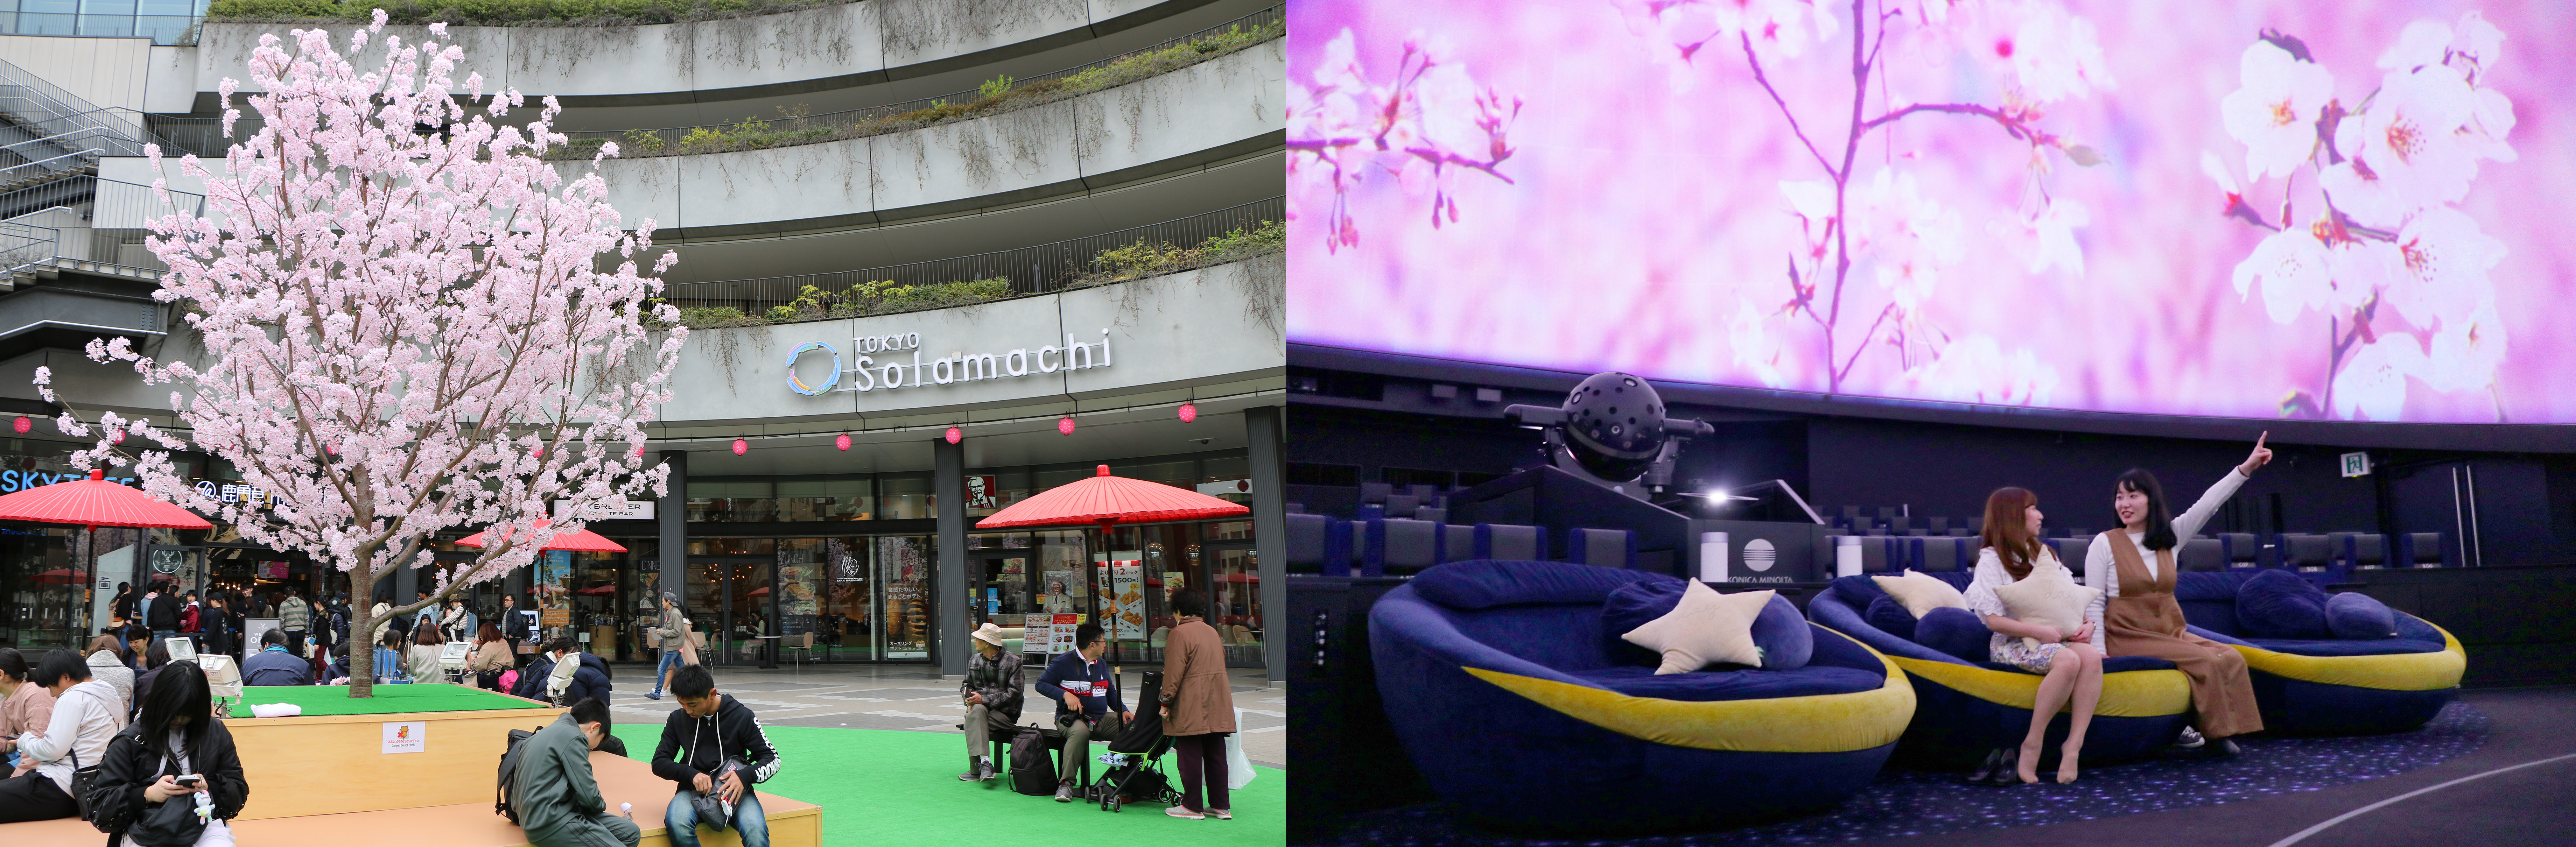 東京スカイツリータウン R の春休み ｇｗイベント 桜をイメージした東京スカイツリー の特別ライティングを点灯 桜モチーフの限定メニュー スイーツも販売 東京スカイツリータウンのプレスリリース